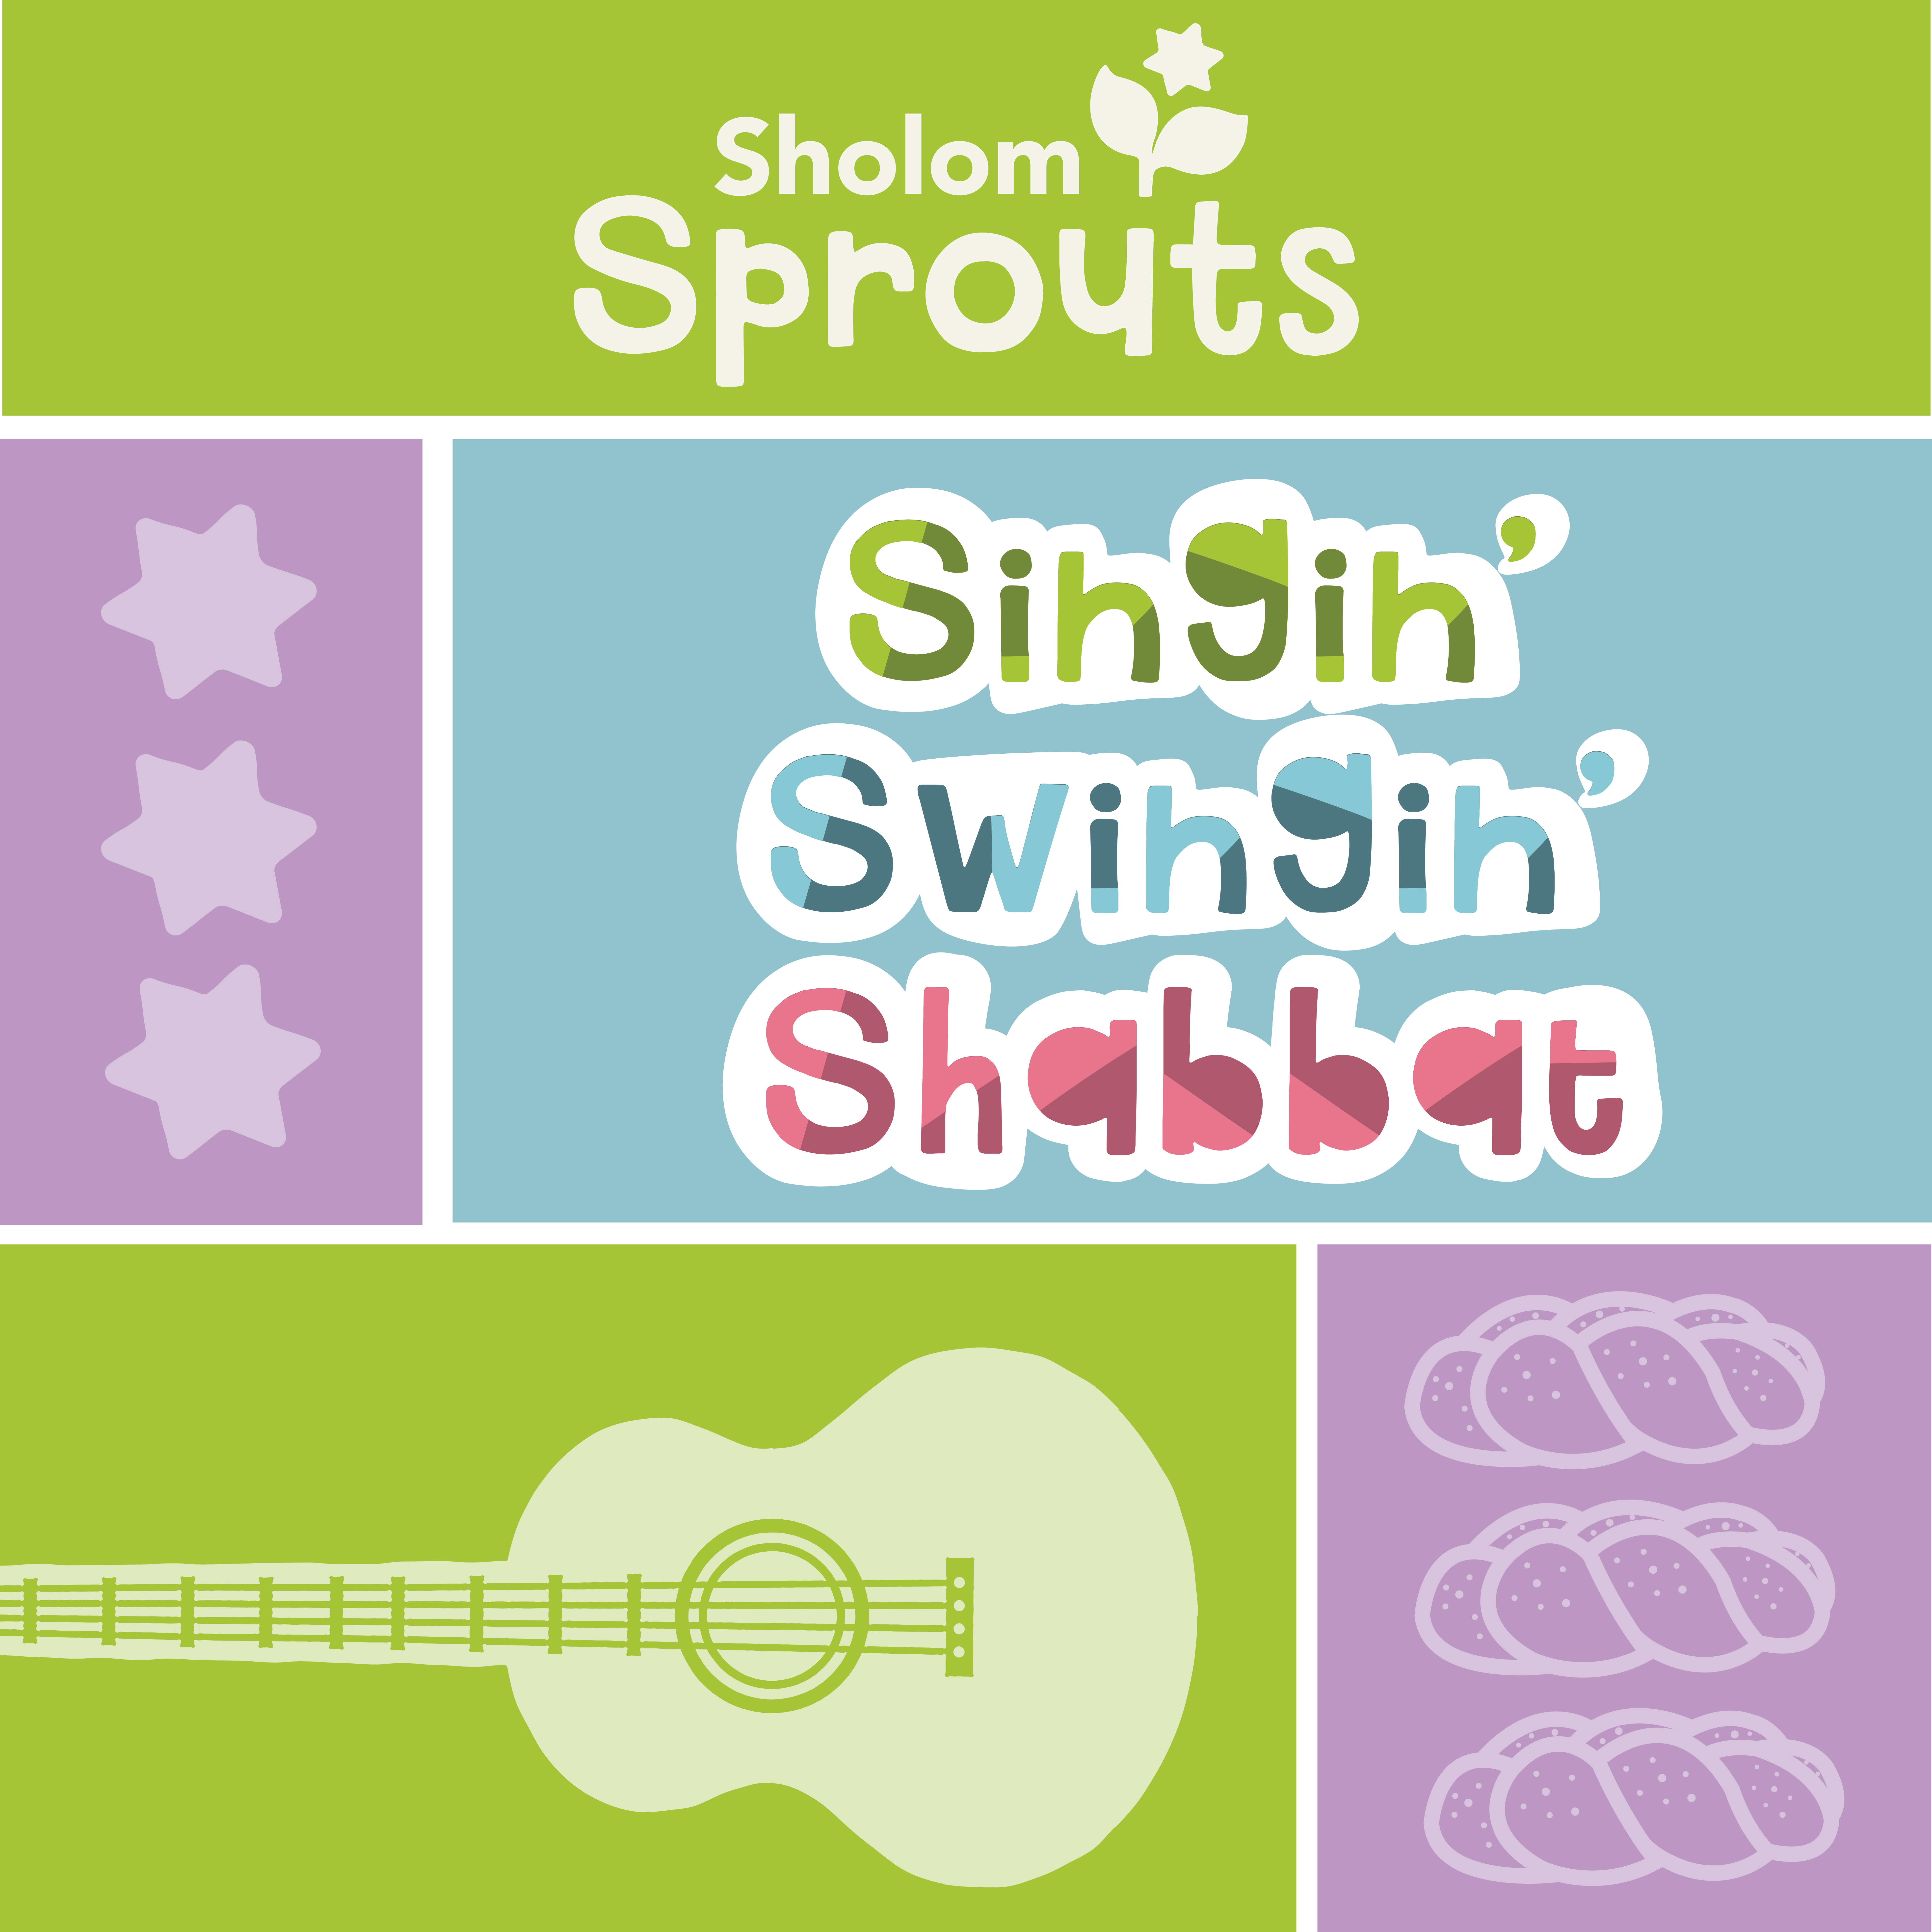 Singin' Swingin' Shabbat logo